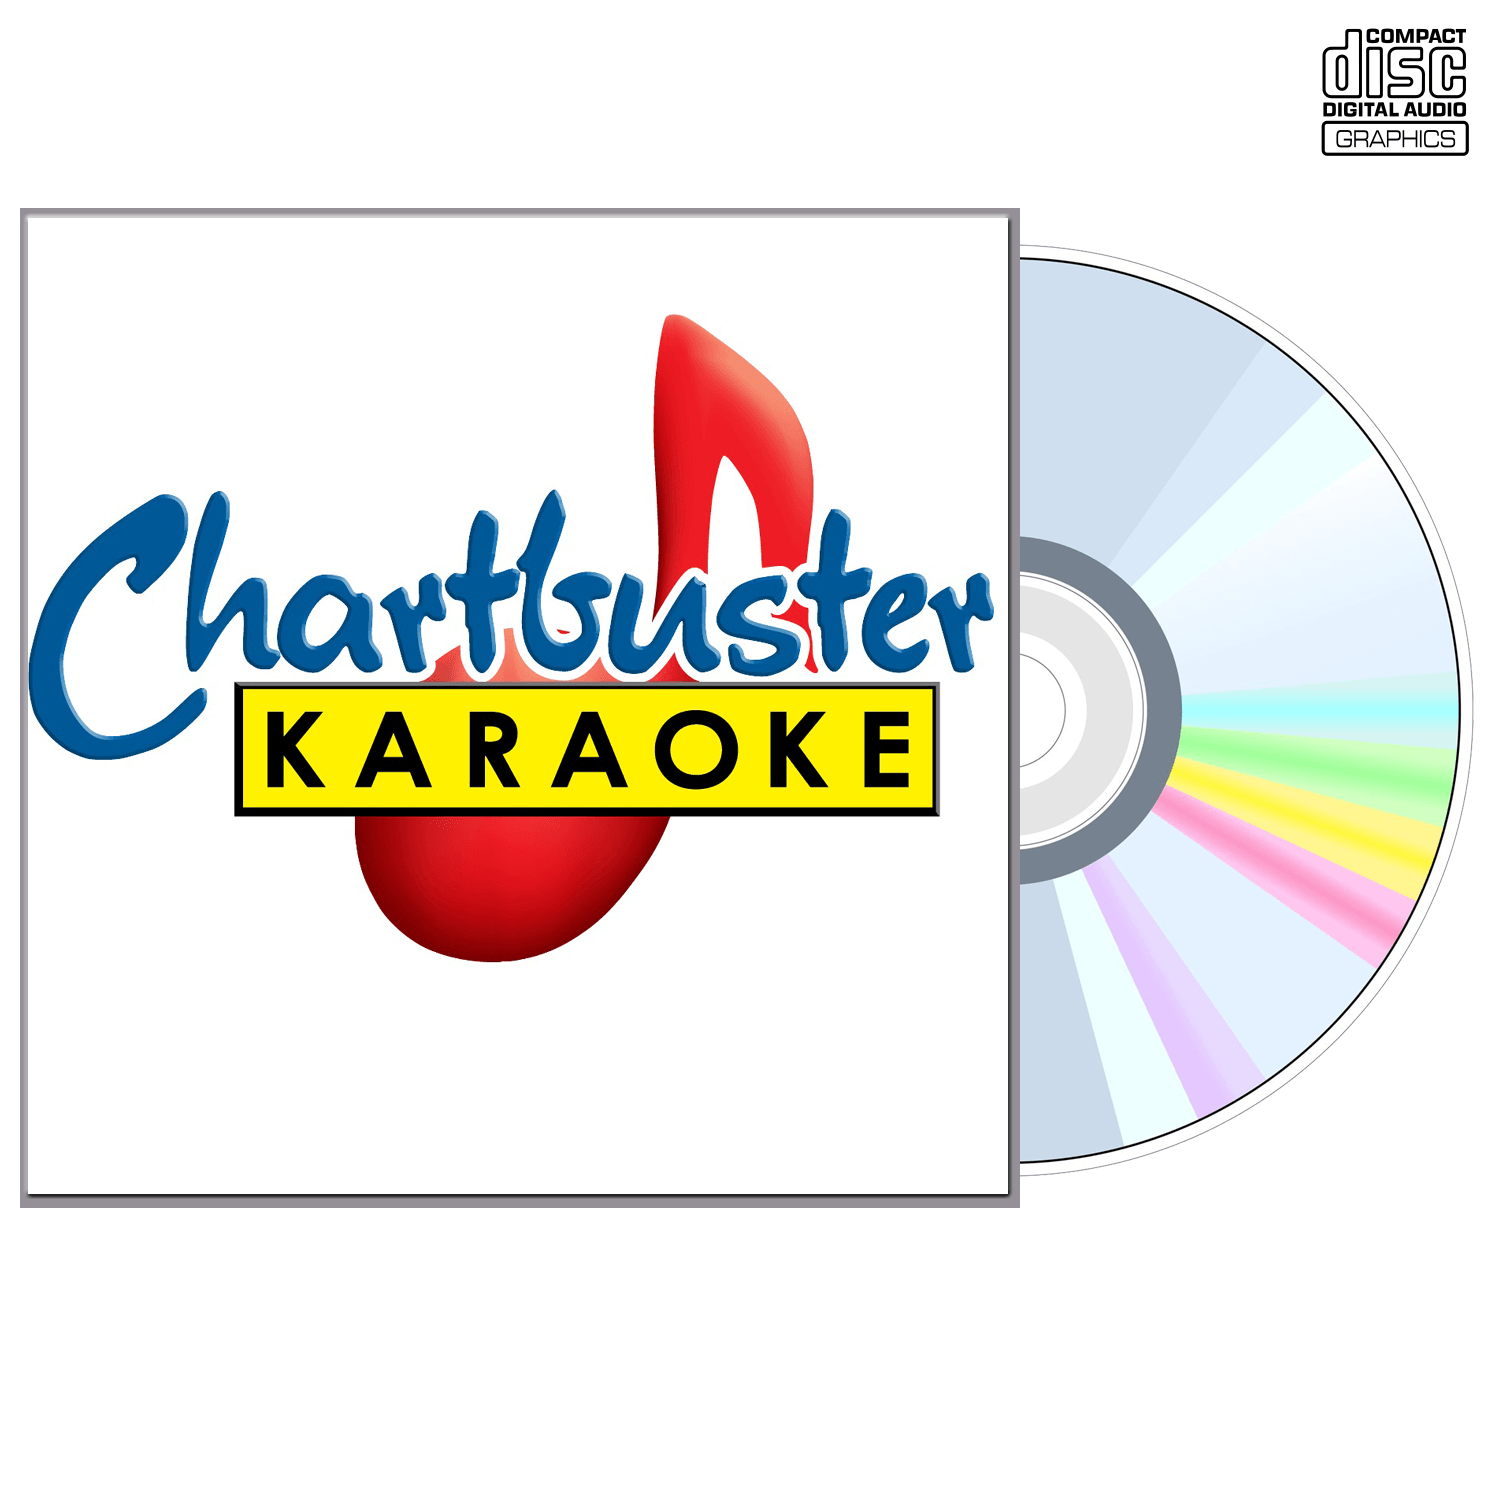 Karaoke Party Vol 2 - CD+G - Chartbuster Karaoke - Karaoke Home Entertainment